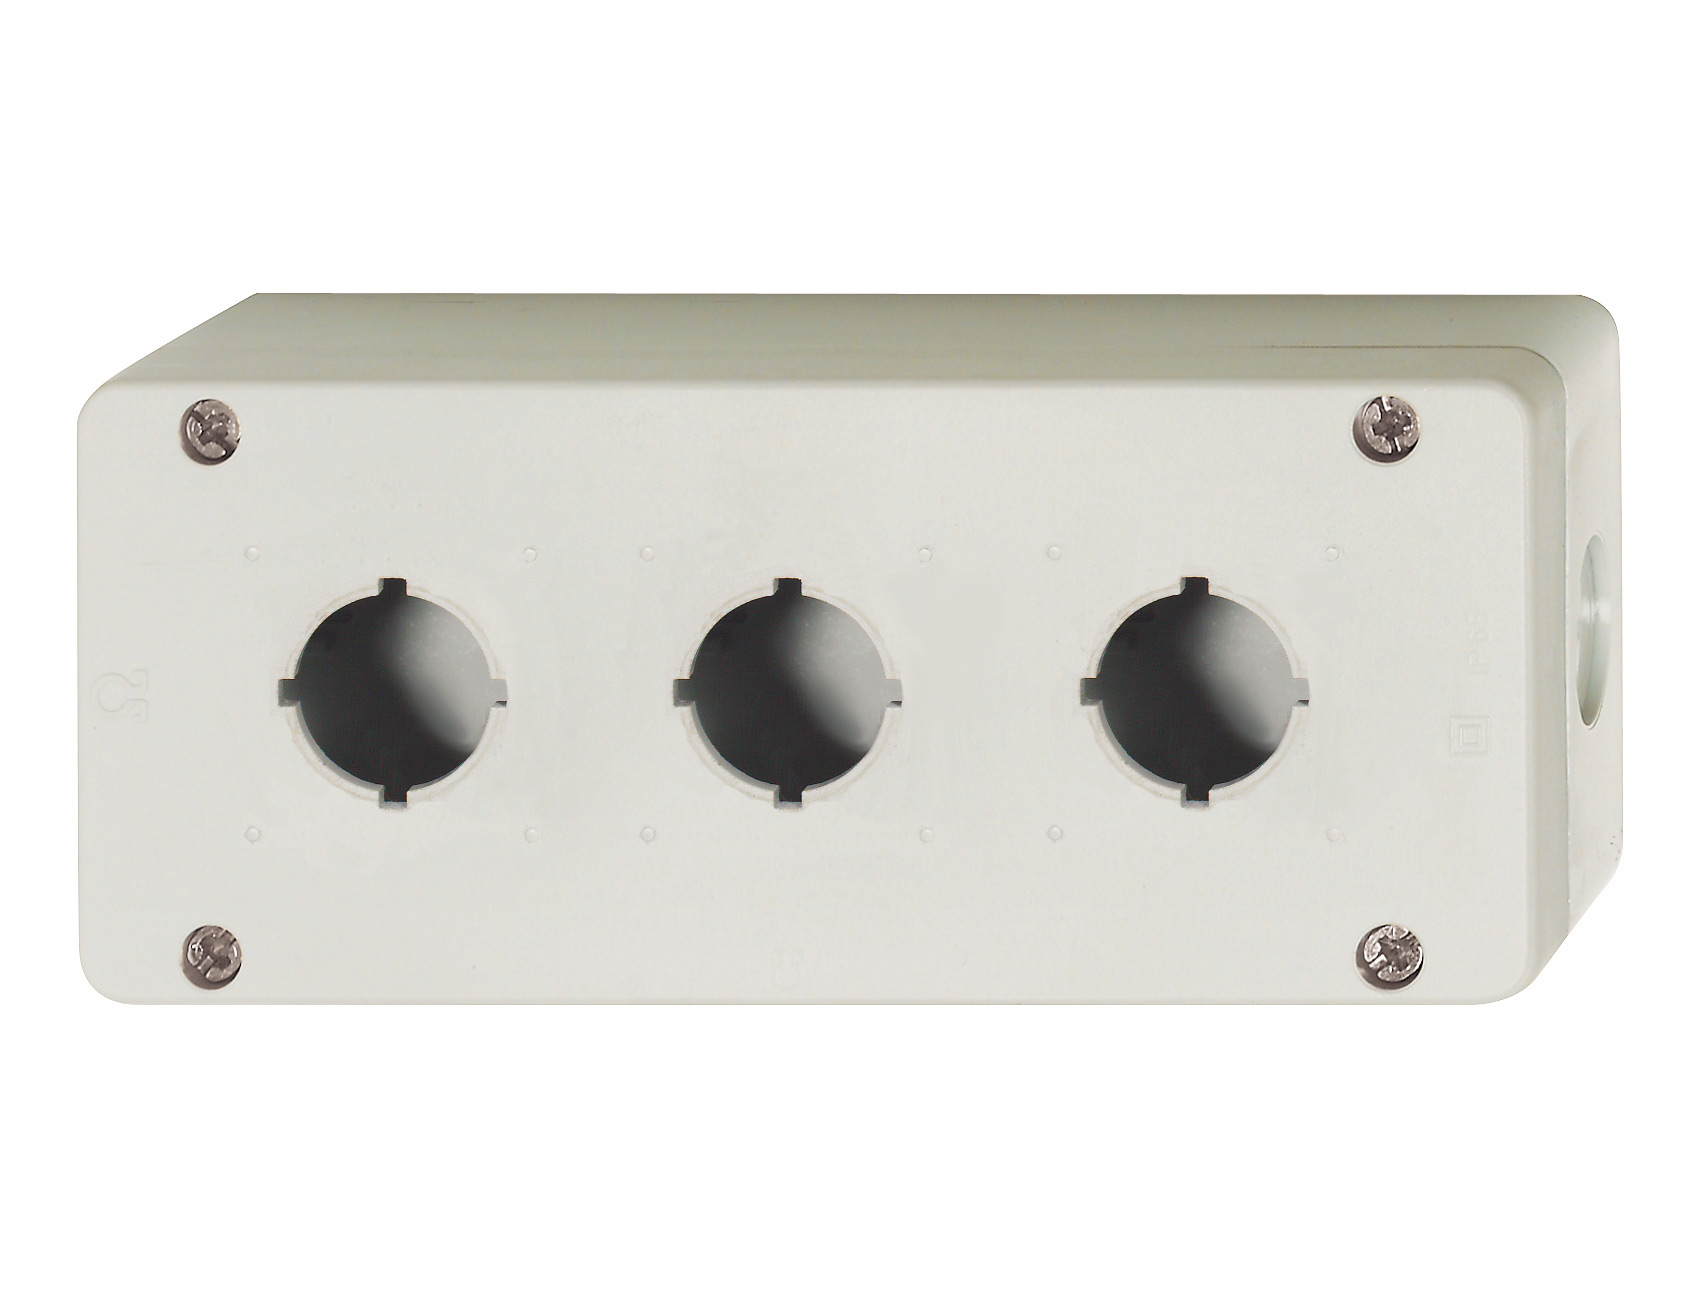 Пластиковый корпус BG, IP67 для 3 кнопок/ламп серии B3, серый, 3 ввода ∅20,5мм BG3 Benedict